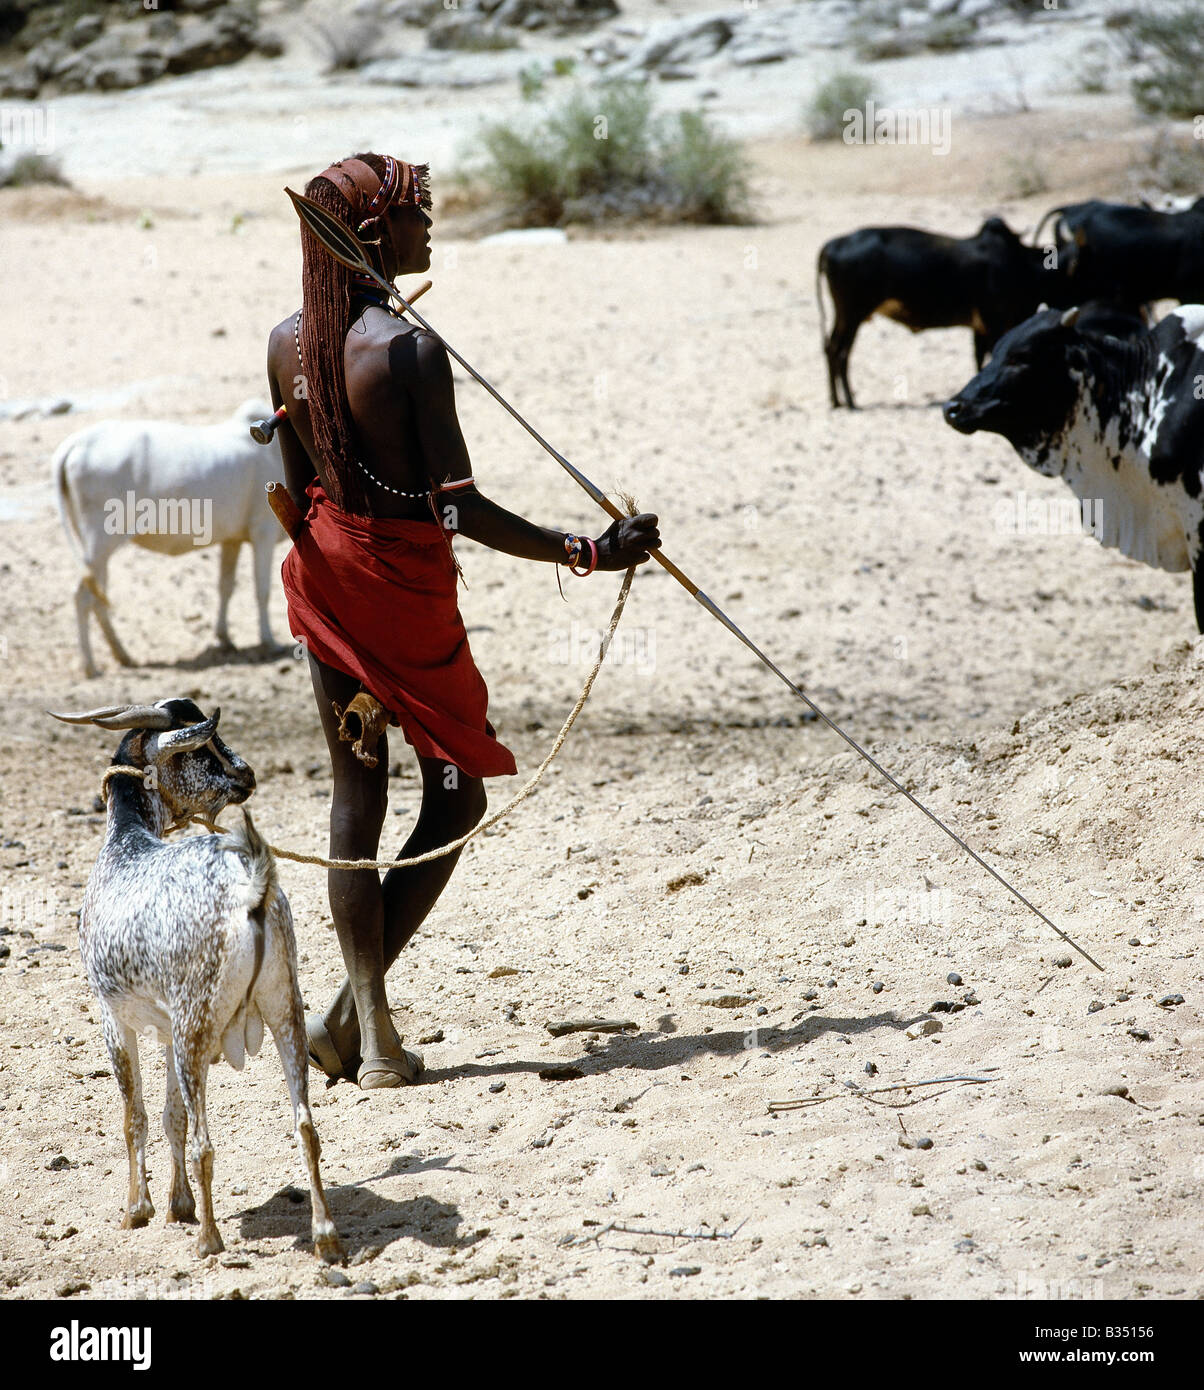 Kenya, Samburu, Ilaut. A Samburu warrior with long, Ochred hair pauses at the waterholes at Ilaut in typical pose. Stock Photo